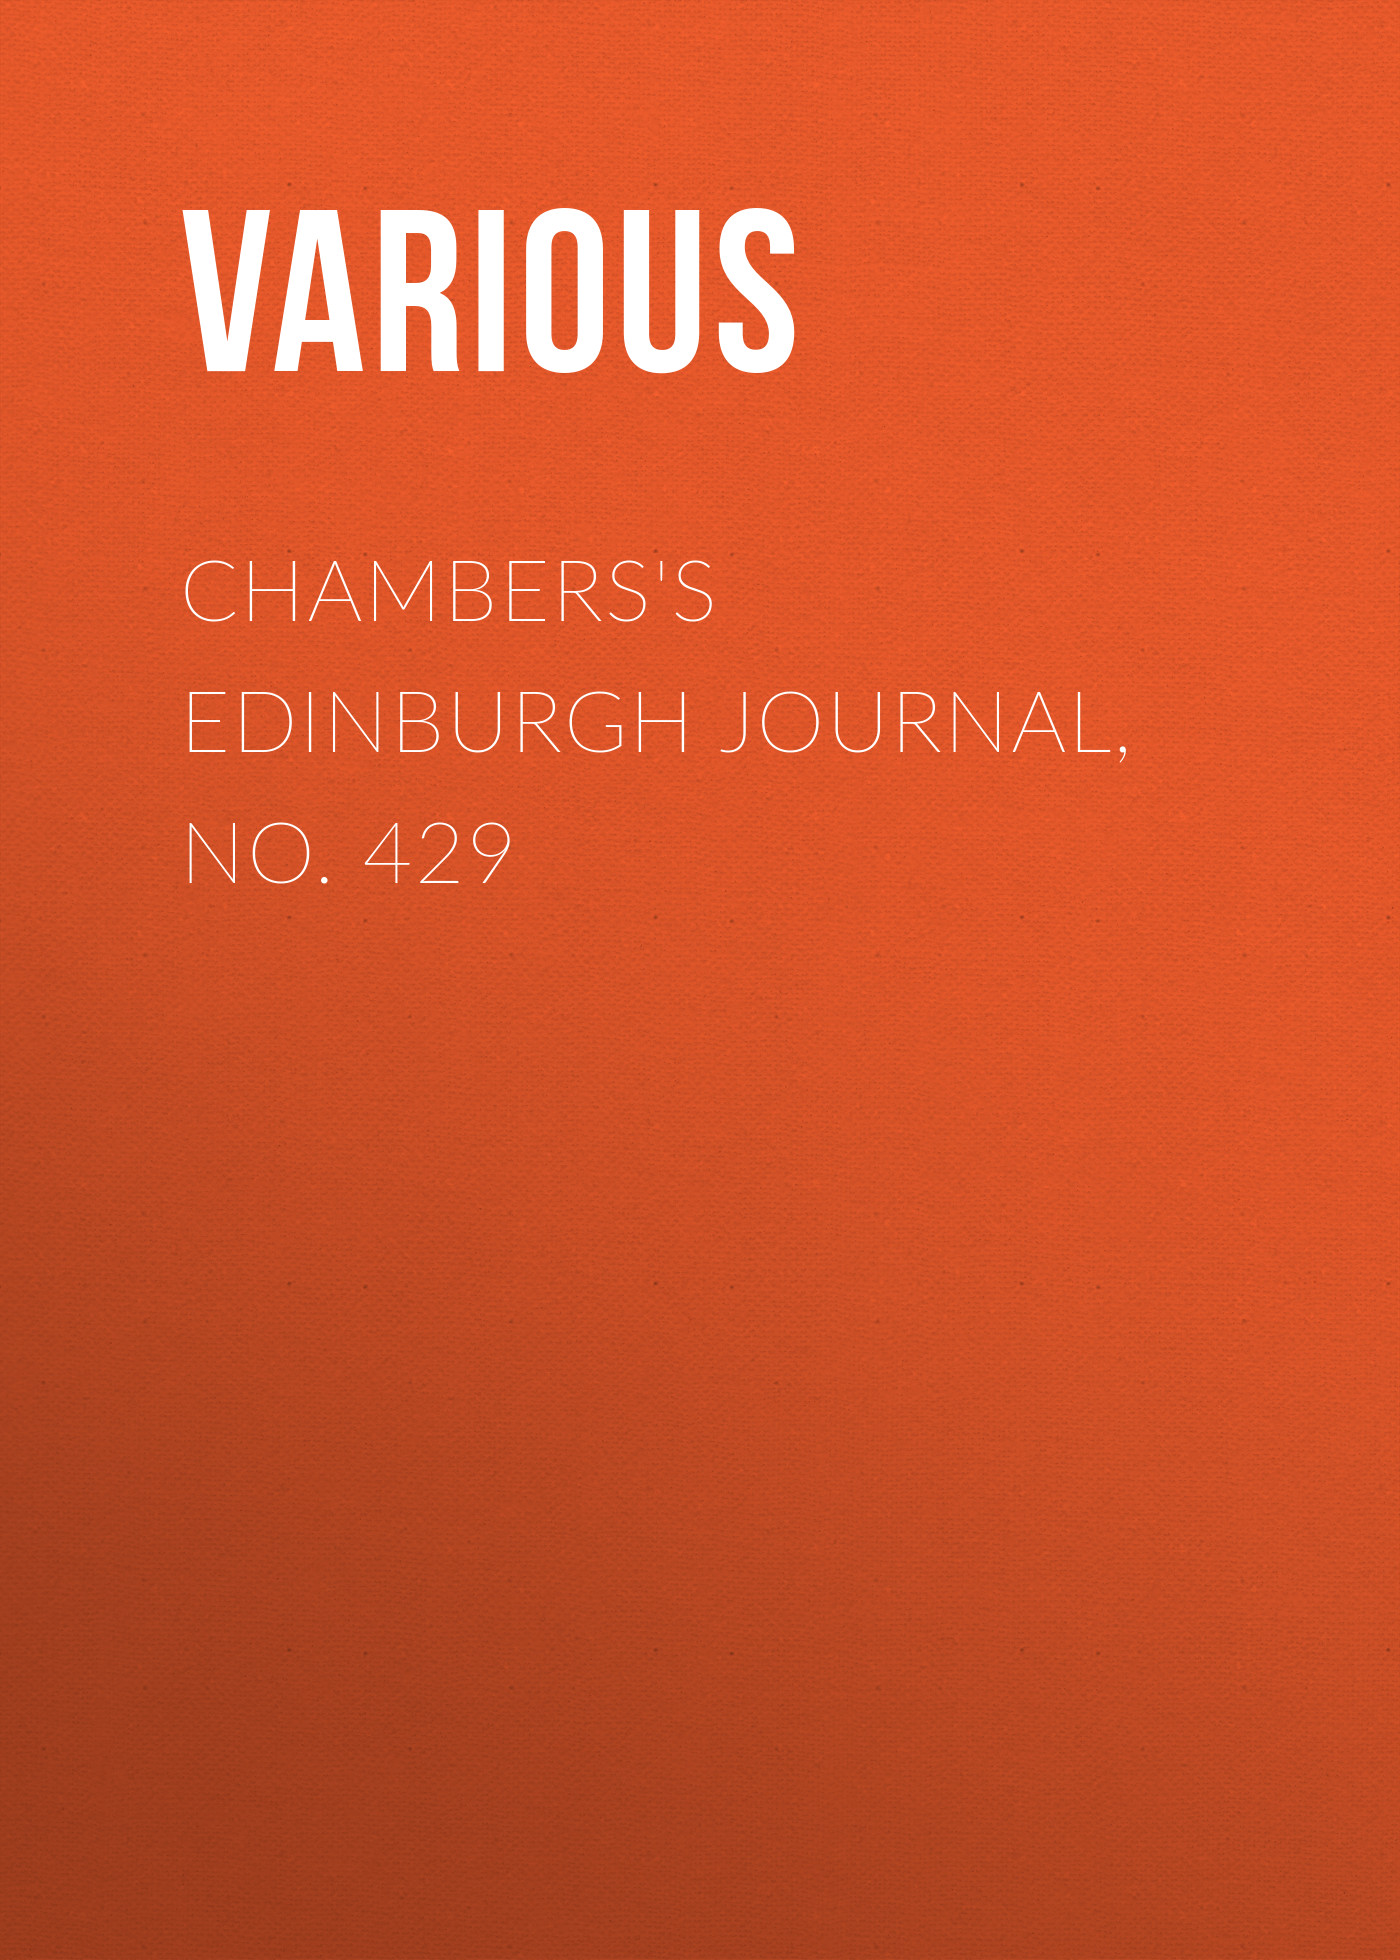 Книга Chambers's Edinburgh Journal, No. 429 из серии , созданная  Various, может относится к жанру Зарубежная старинная литература, Журналы, Зарубежная образовательная литература. Стоимость электронной книги Chambers's Edinburgh Journal, No. 429 с идентификатором 35492199 составляет 0 руб.